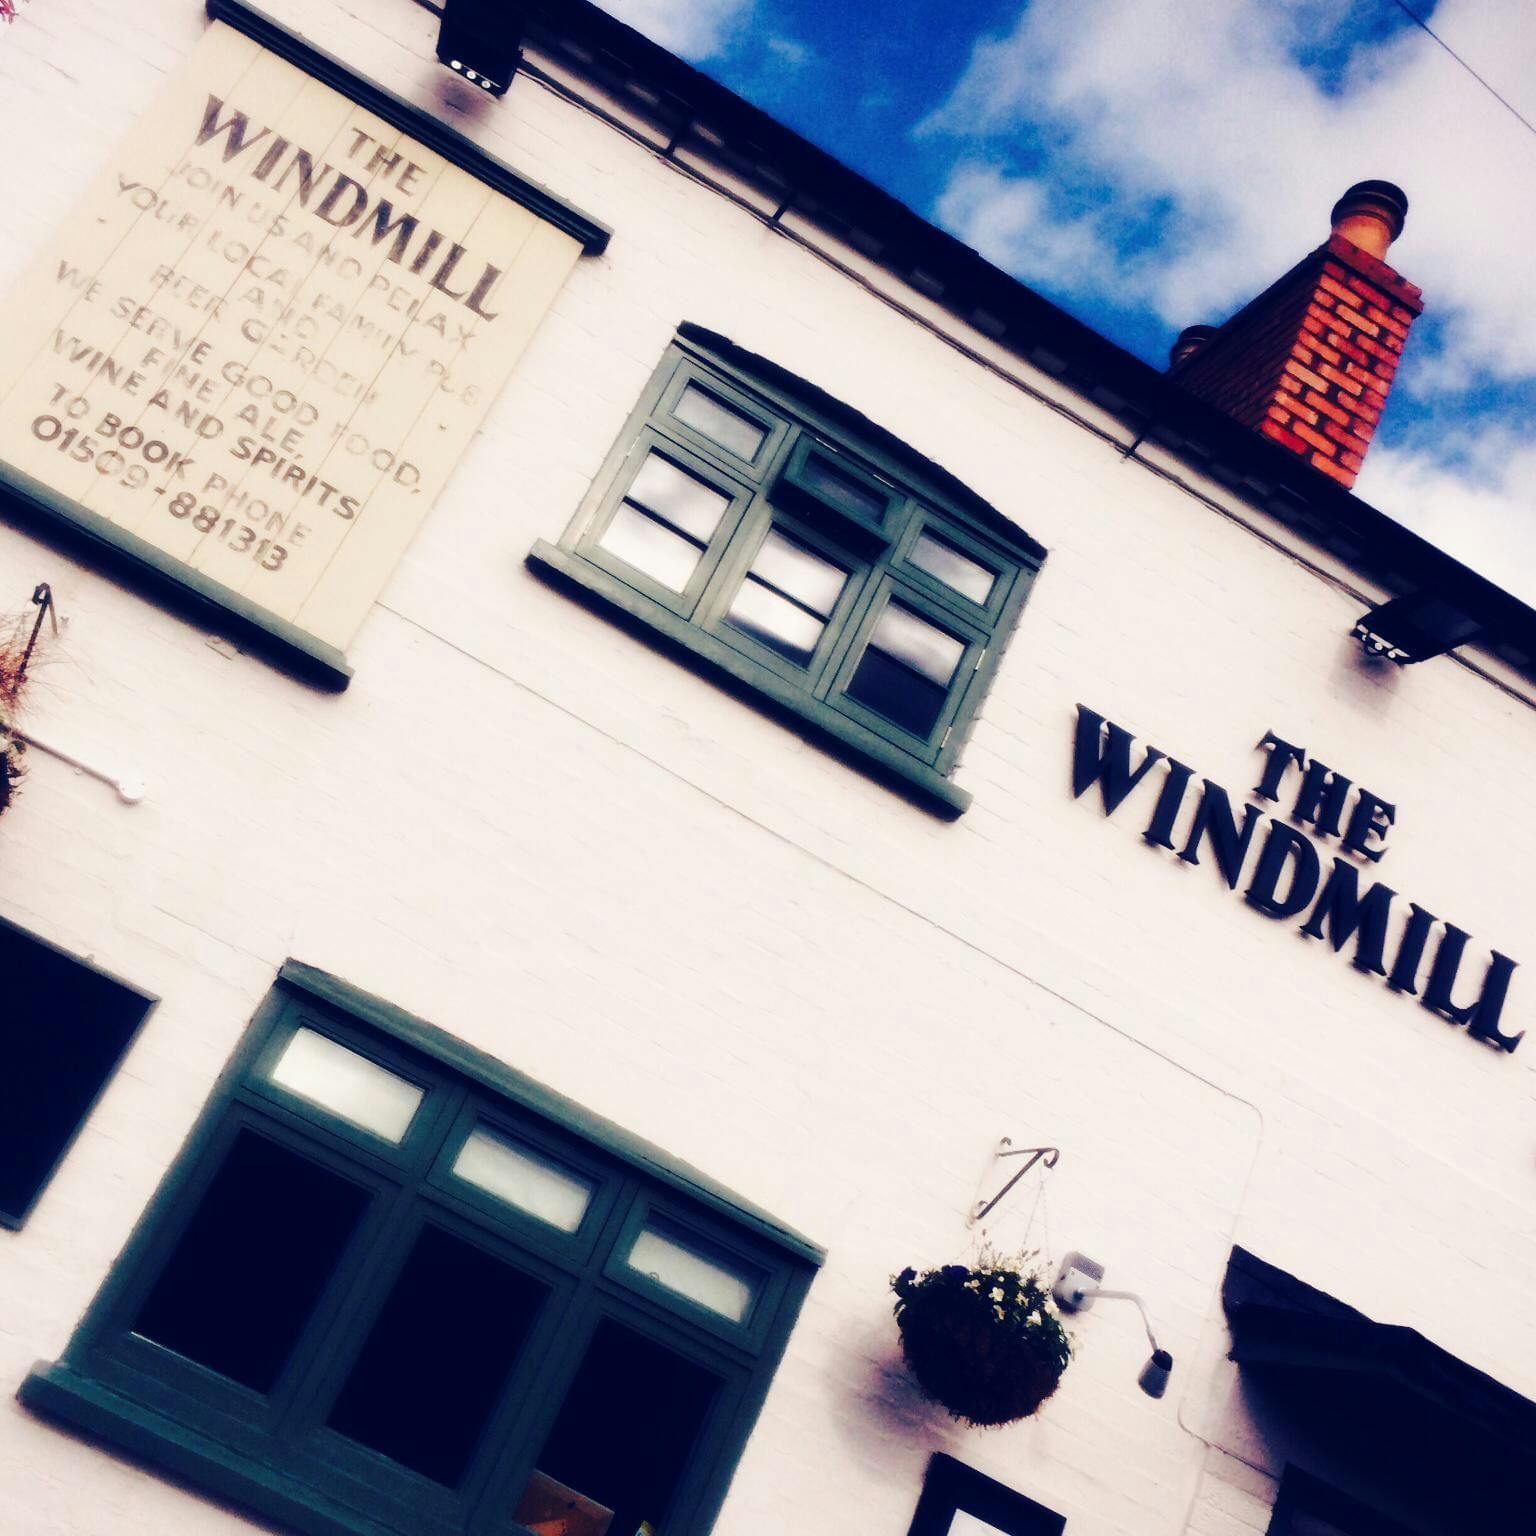 The Windmill Inn Photos